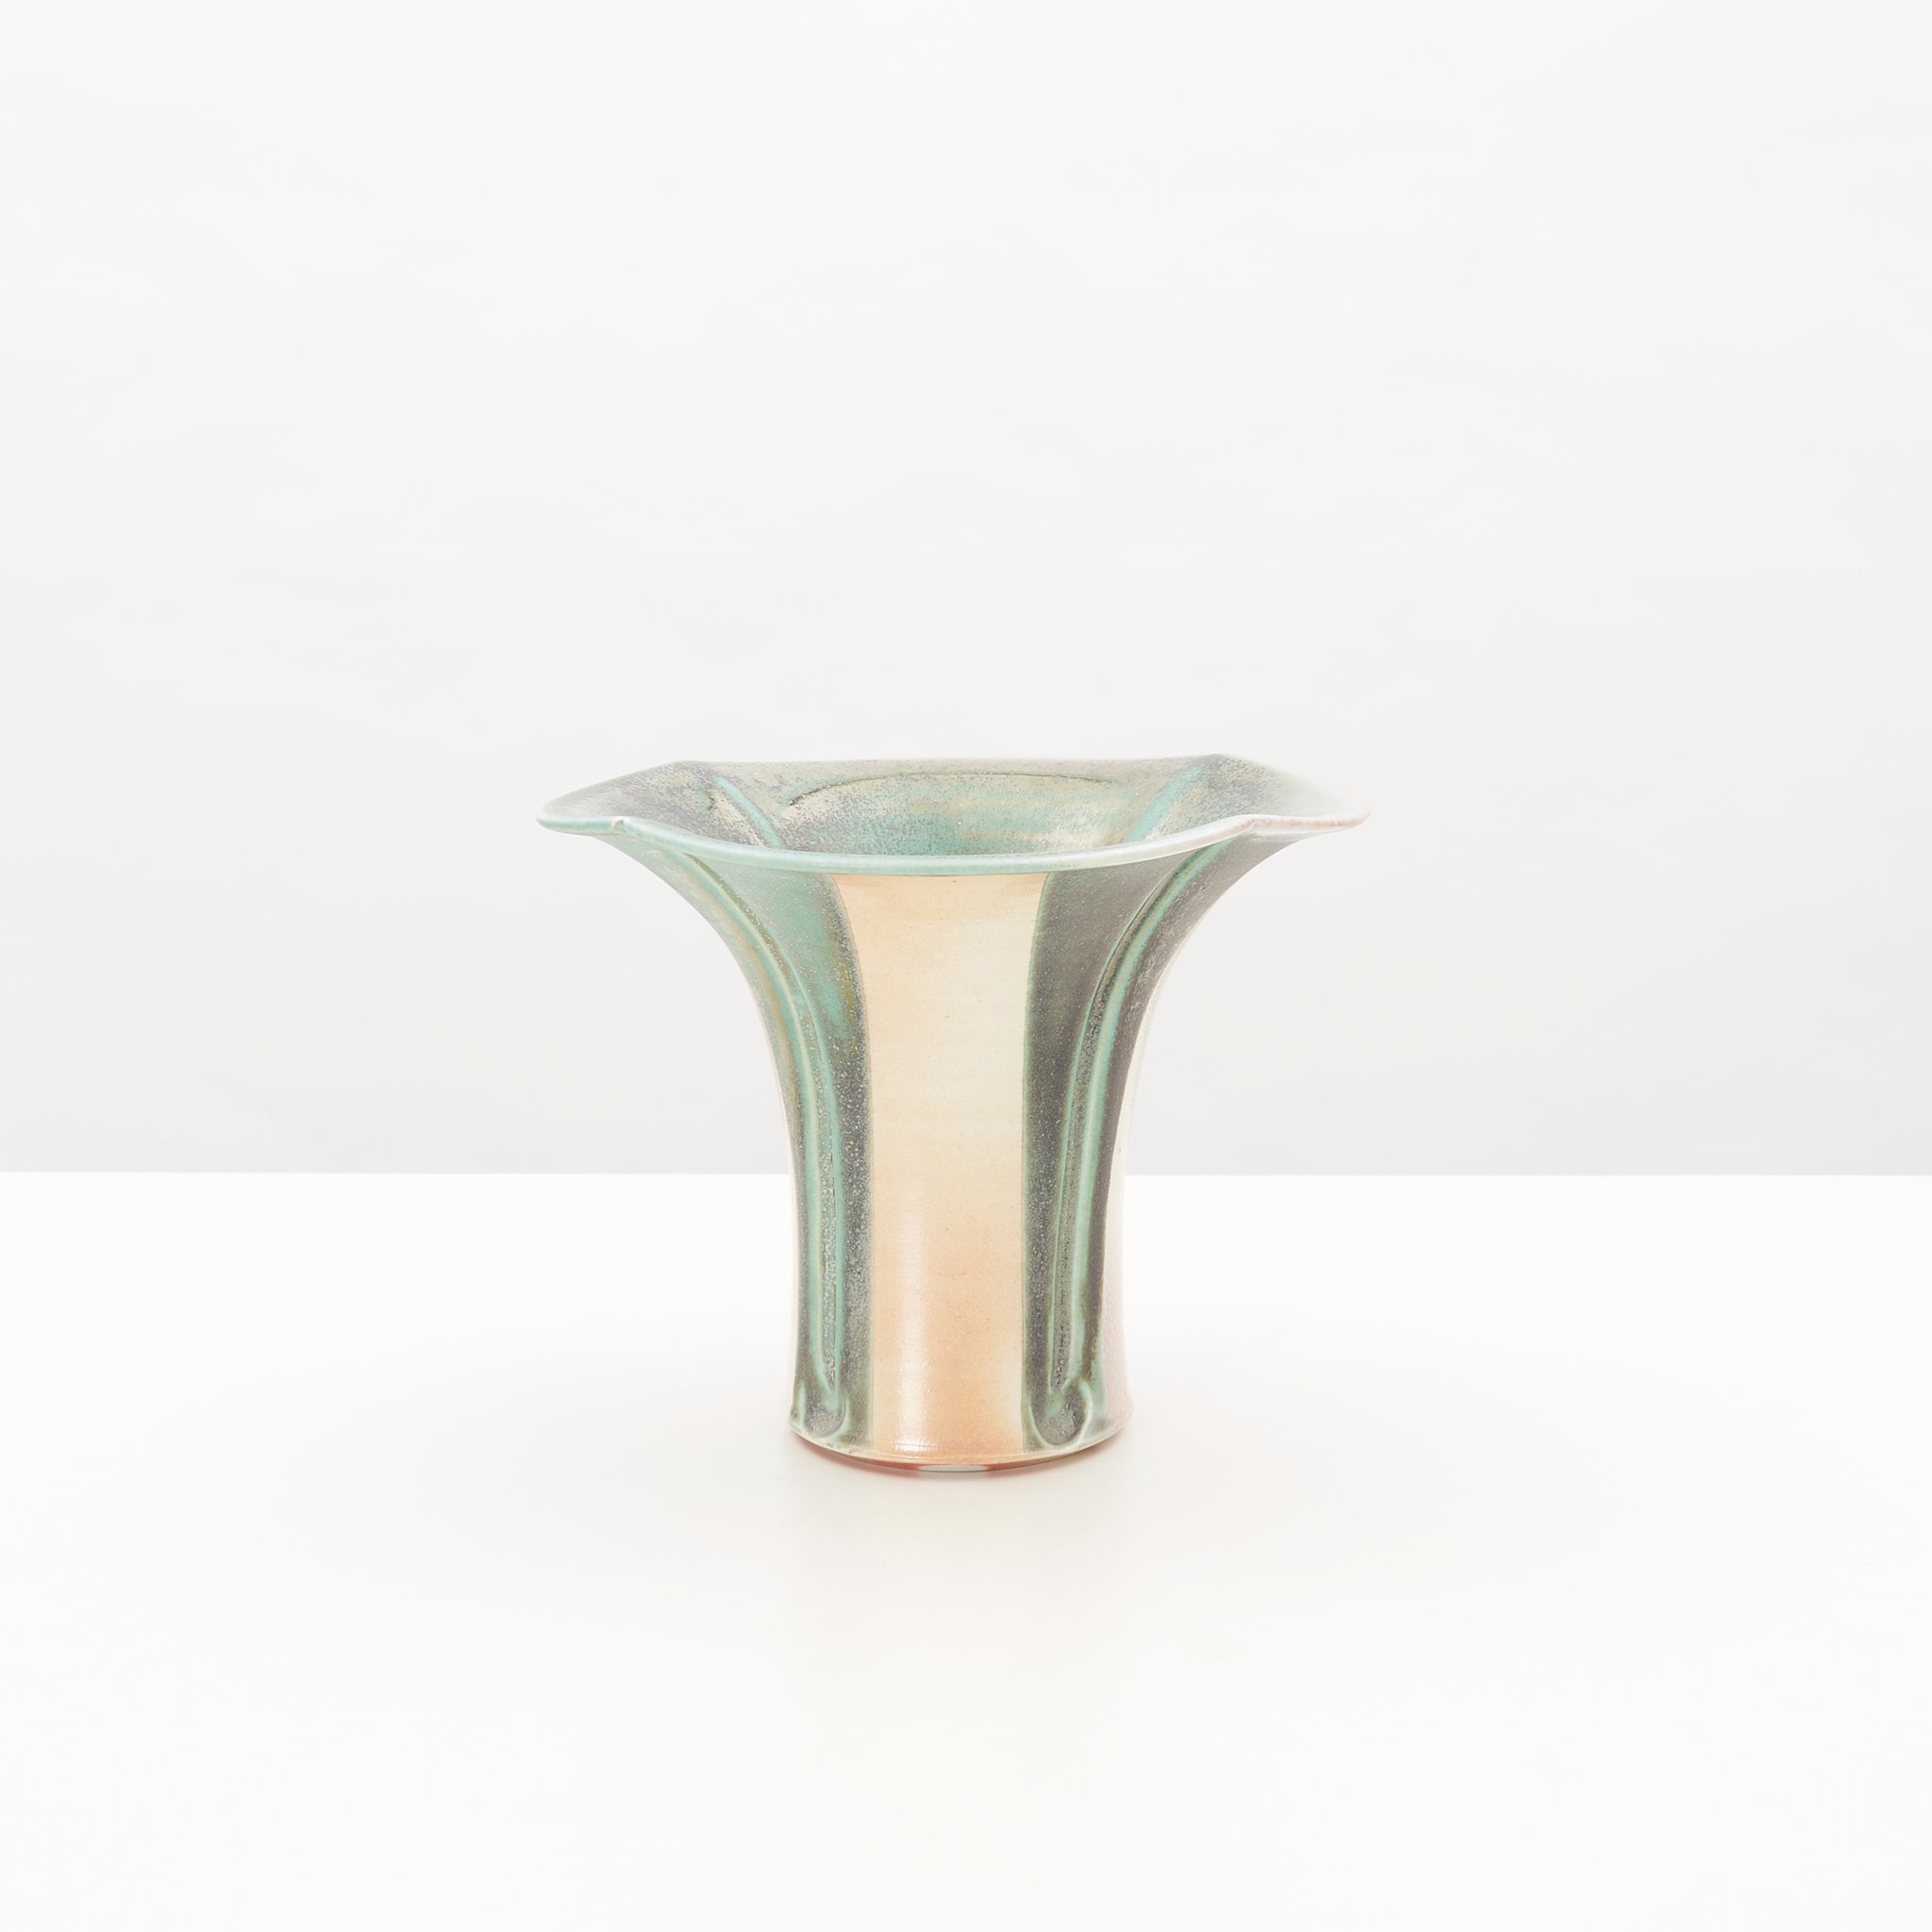 Signed Ceramic Studio Vase